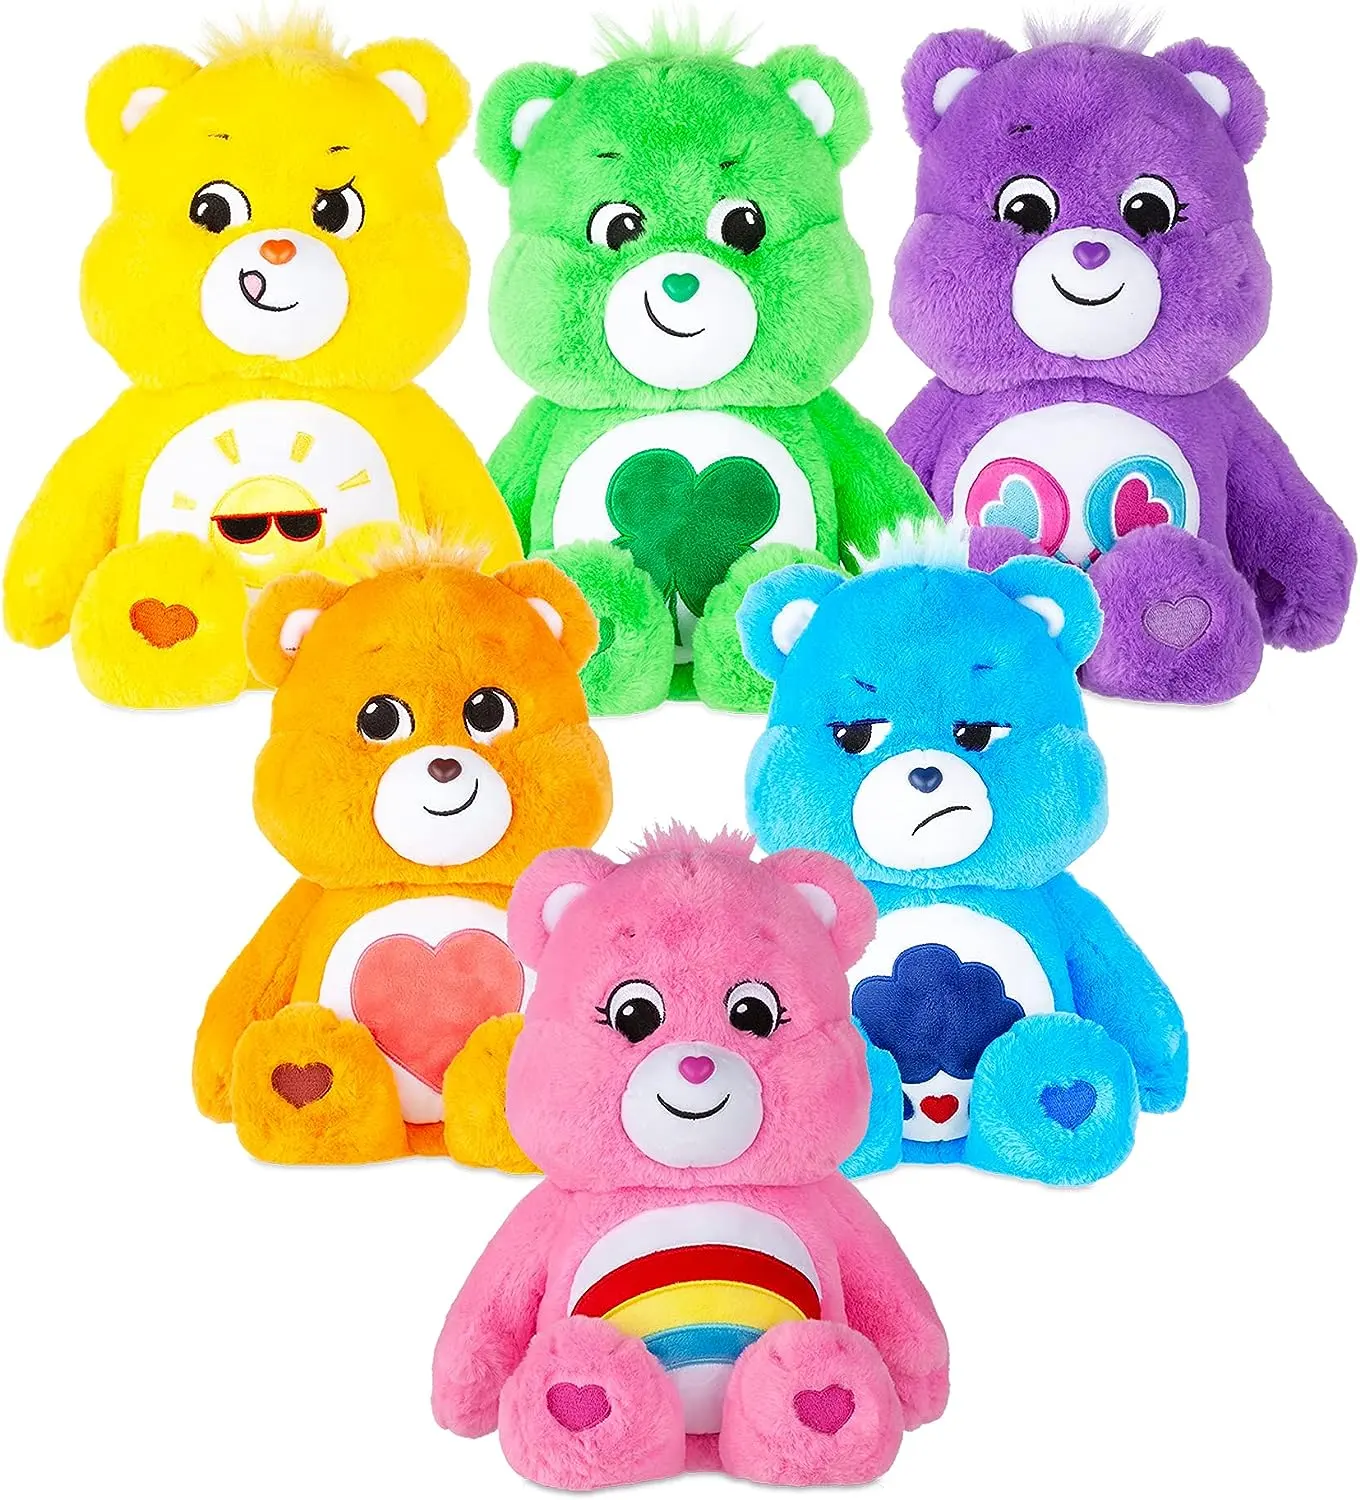 Weihnachten kümmert sich um Bär Gefüllte Spielzeuge Süße Teddys Bären puppen Cartoon Kuscheltiere Weiches Spielzeug kümmert sich um Bären plüsch